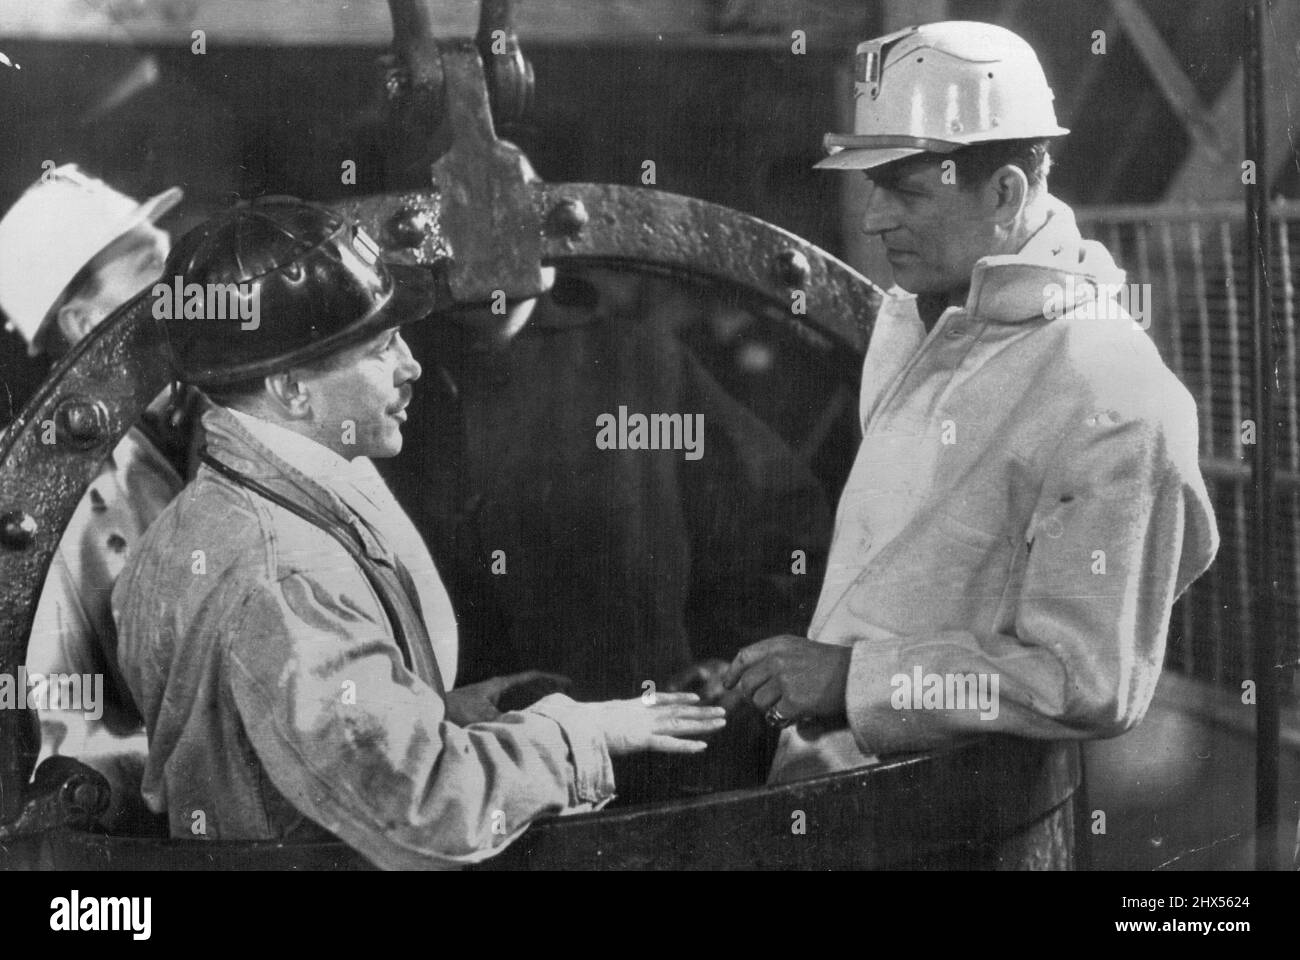 Le duc va au charbon MiningLe duc d'Édimbourg avec M. C. H. Richards, le directeur de la fosse, sur le point de descendre dans Un 'Hoppit' à Mosley Common Collery au jour le jour son altesse Royale le duc d'Édimbourg fait une visite de huit heures au champ de charbon de Lancashire. Ce matin, il descend à environ 1500 pieds de la mine de charbon Mosley Common, près de Boothstown. Il portait une combinaison et un casque blanc de mineur. Il portait une lampe de sécurité. À son entrée dans la mine, on lui a demandé comme tous les autres mineurs s'il transportait de la contrebande et s'il était « frison » pour des allumettes, des briquets et d'autres produits pour fumer. Au niveau du botto Banque D'Images